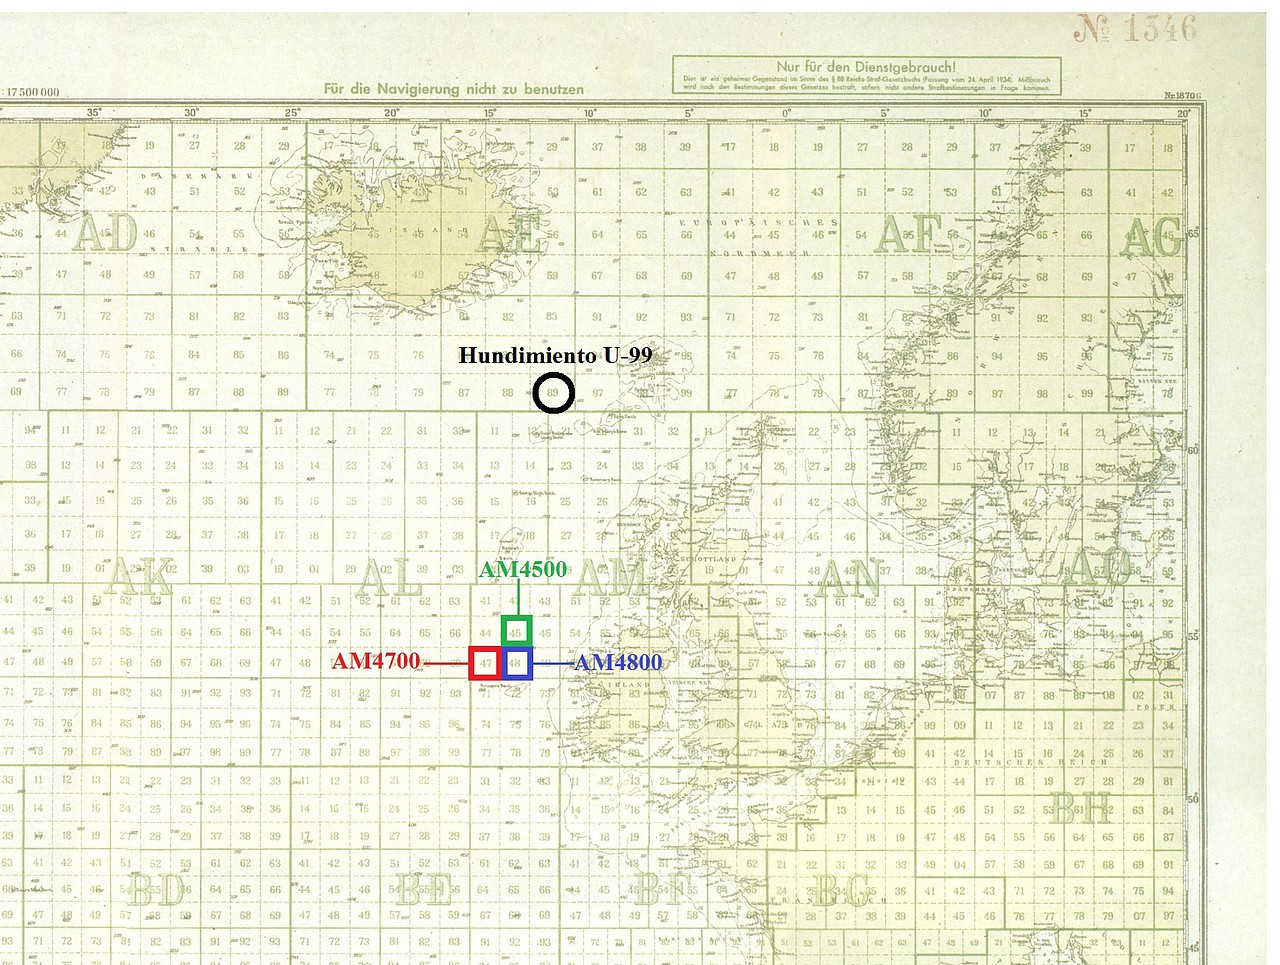 El cuadrante azul AM4800 corresponde a la zona inicial de patrulla del U-99 y donde hundió al SS casanare. El cuadrante rojo AM4700 corresponde a la zona donde se desarrolló el combate con el HMS Laurentic II y HMS Patroclus y el cuadrante verde AM4500, a la zona donde se desplazó tras el combate. Finalmente en el círculo negro corresponde al lugar donde se produjo el hundimiento del U-99 el 17 de marzo de 1941